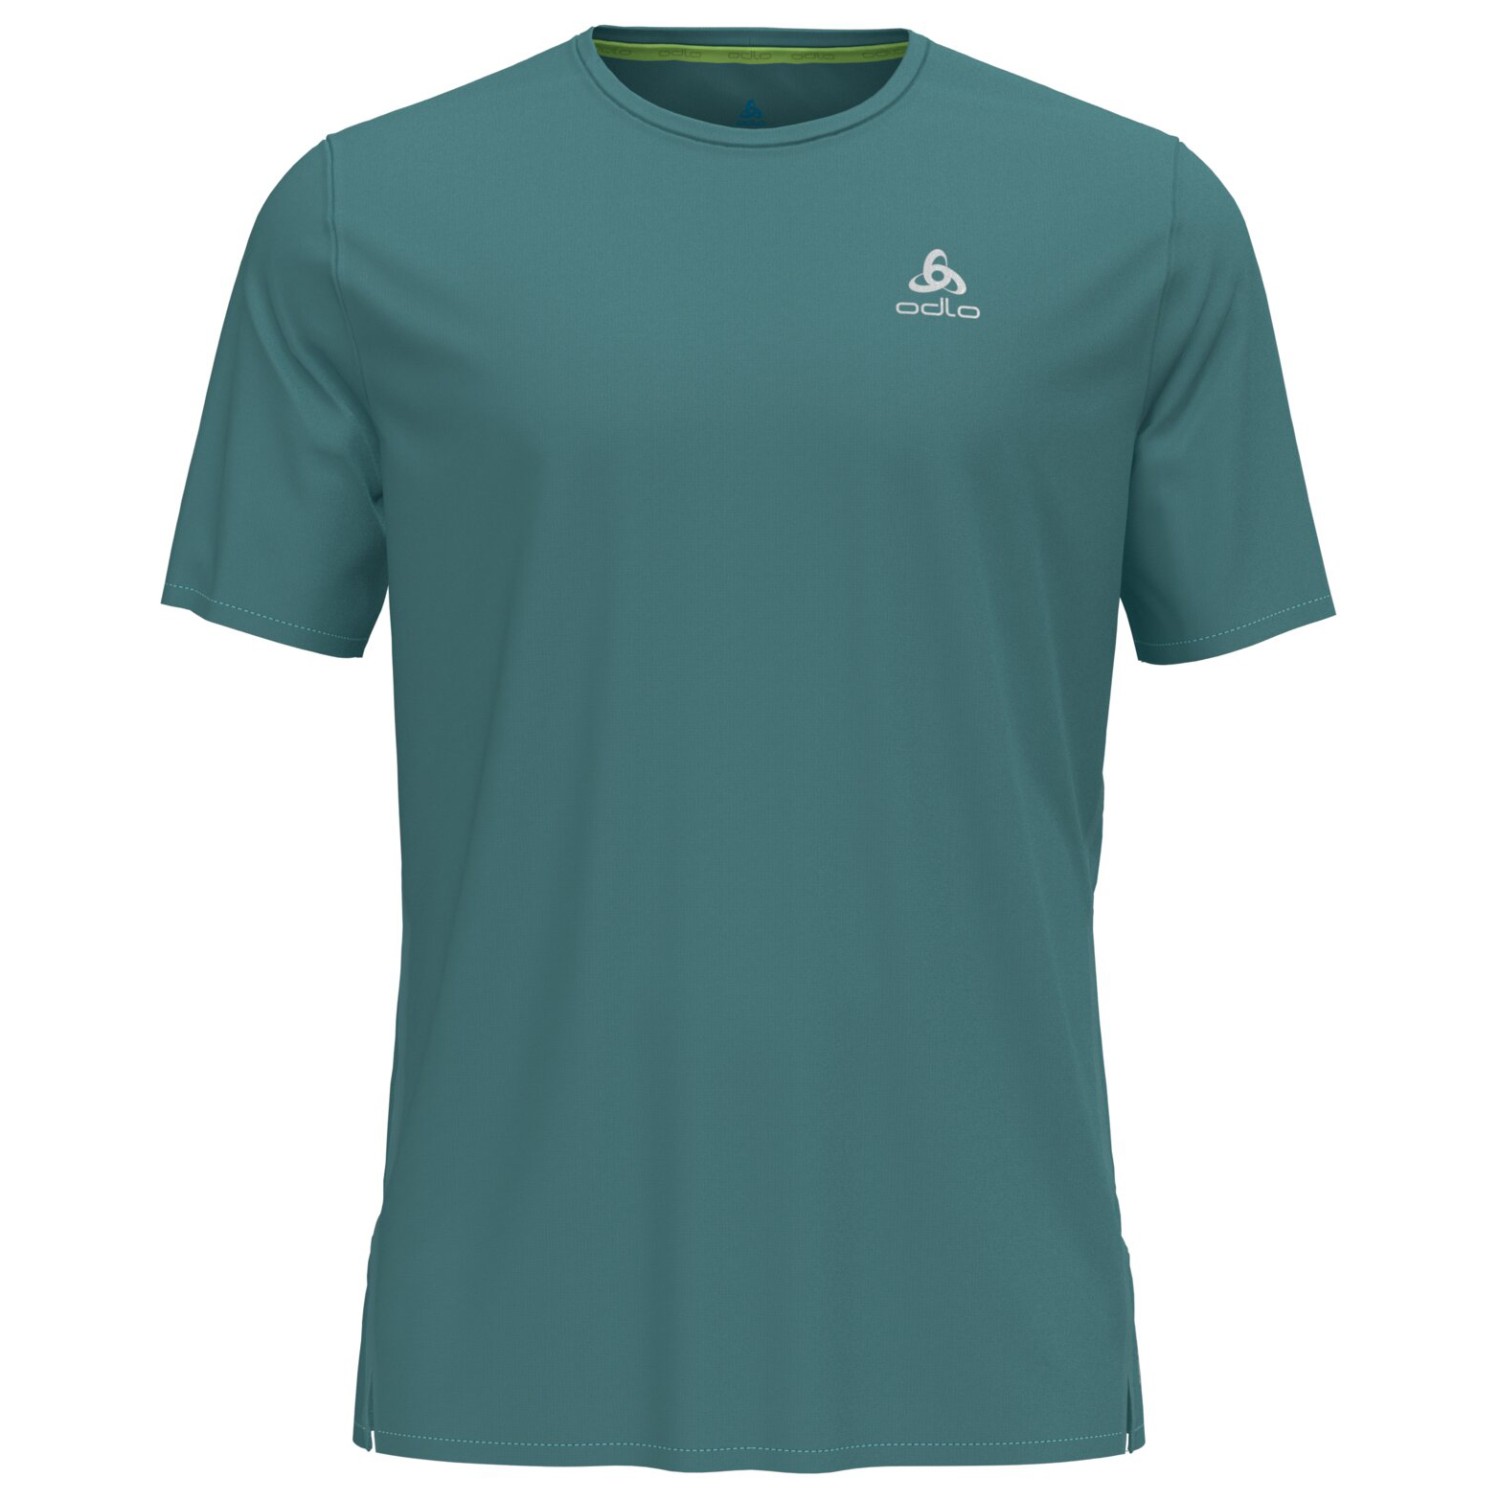 Беговая рубашка Odlo T Shirt S/S Crew Neck Zeroweight Chill Tec, цвет Arctic цена и фото